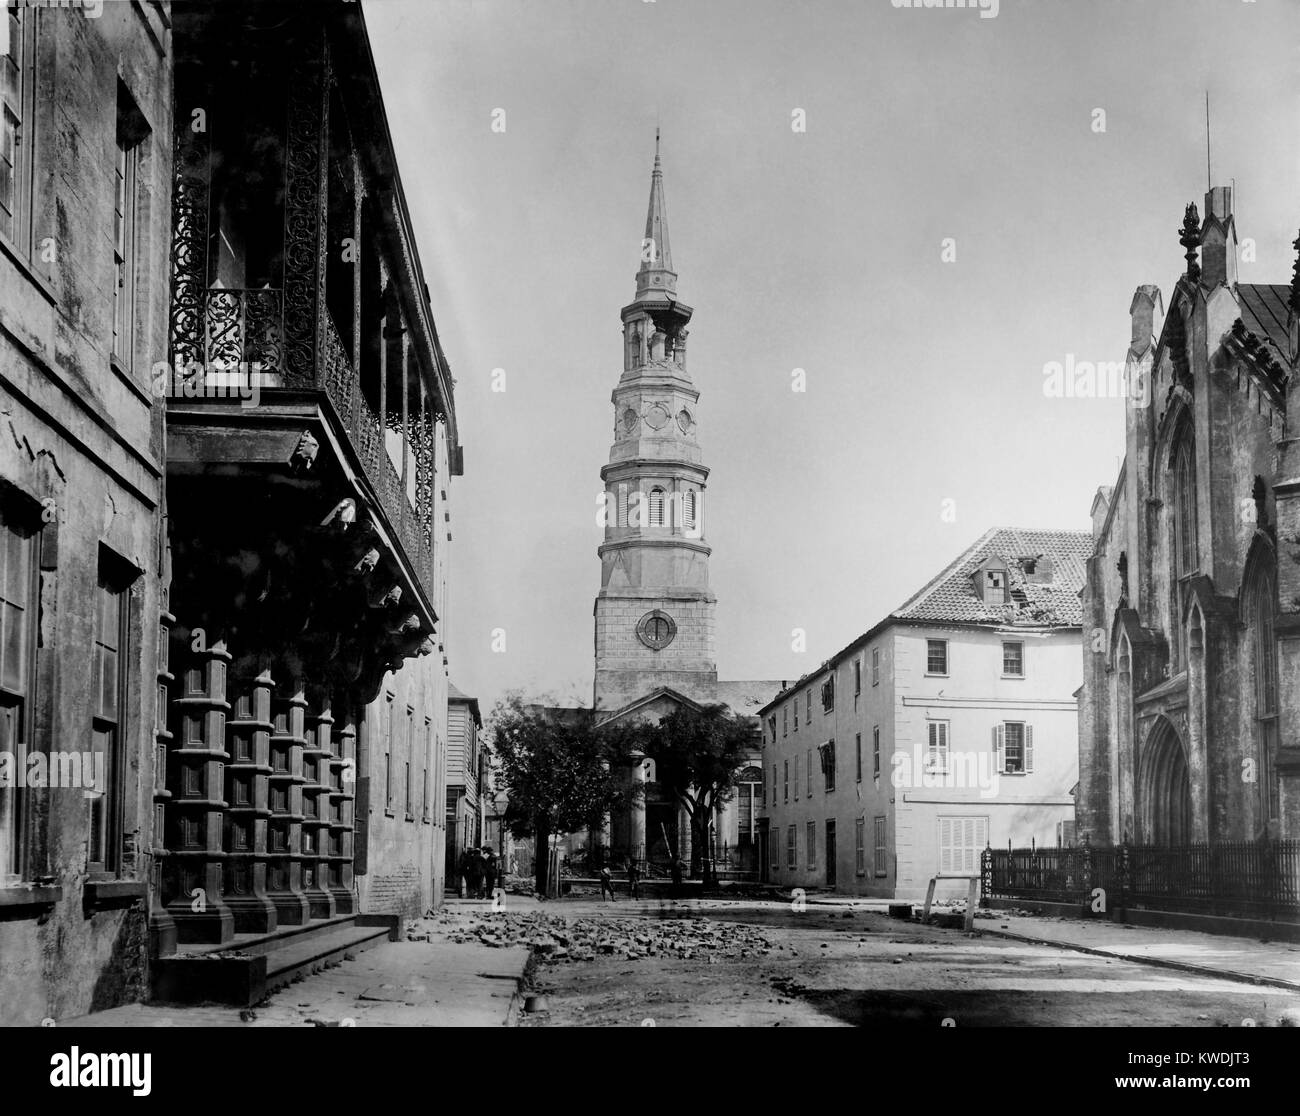 St. Philips Kirchturm durch Charleston Erdbeben vom 31. August 1886 beschädigt. Es war die meisten zerstörerischen Erdbeben überhaupt im Osten der Vereinigten Staaten aufgenommen, messen 6,9 - 7,3 auf der Richterskala. Foto von John K. Hillers (BSLOC 2017 17 54) Stockfoto